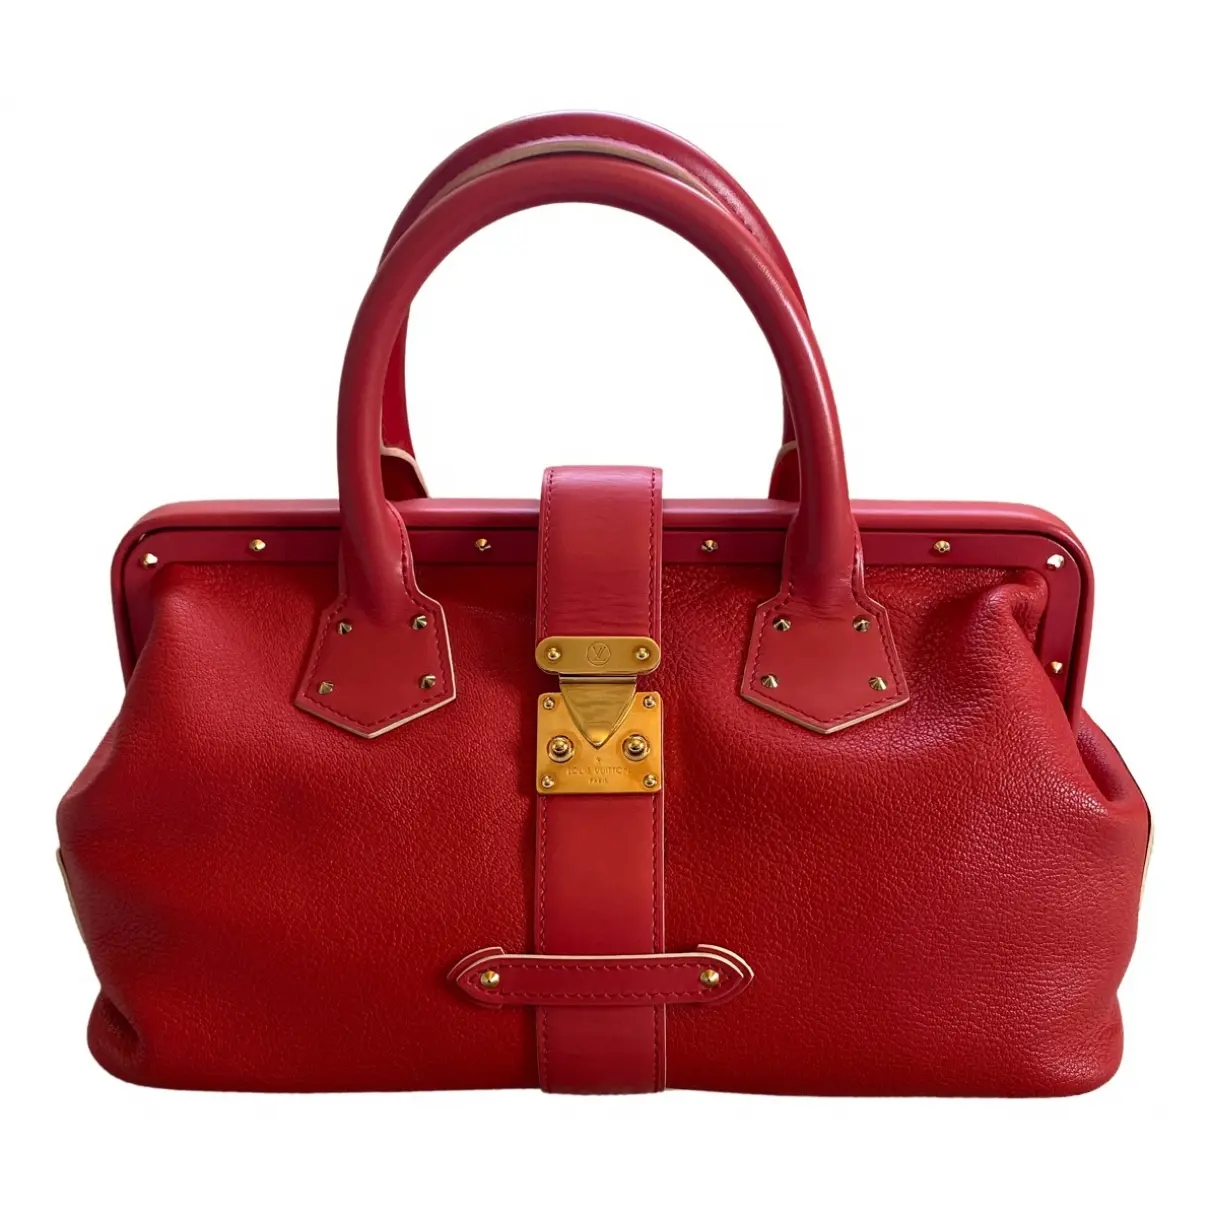 L'Ingénieux leather handbag Louis Vuitton